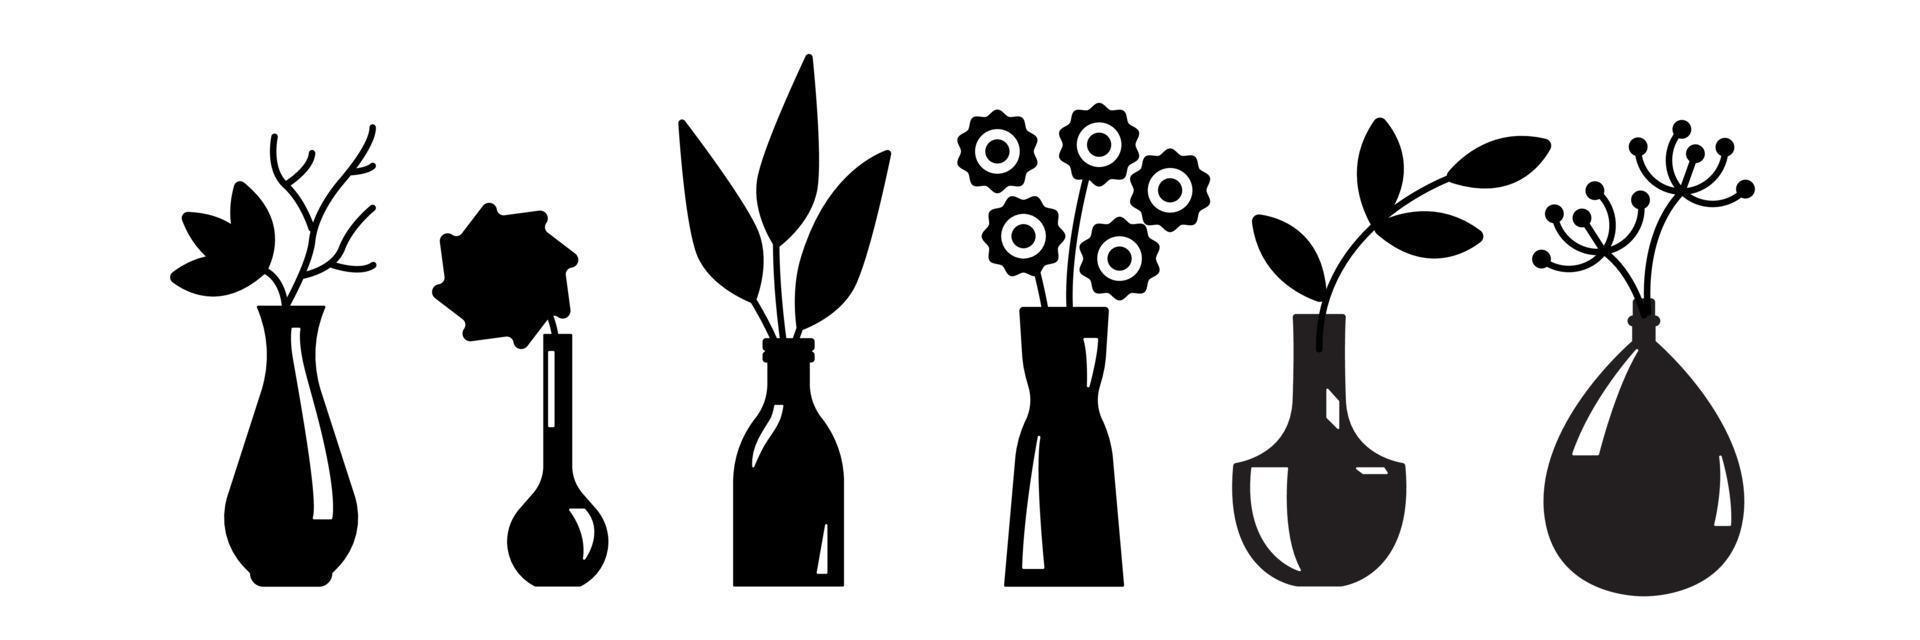 flores en la silueta del jarrón. simplemente formas. elemento de interior, decoración de diseño. ilustración vectorial sobre fondo blanco aislado vector